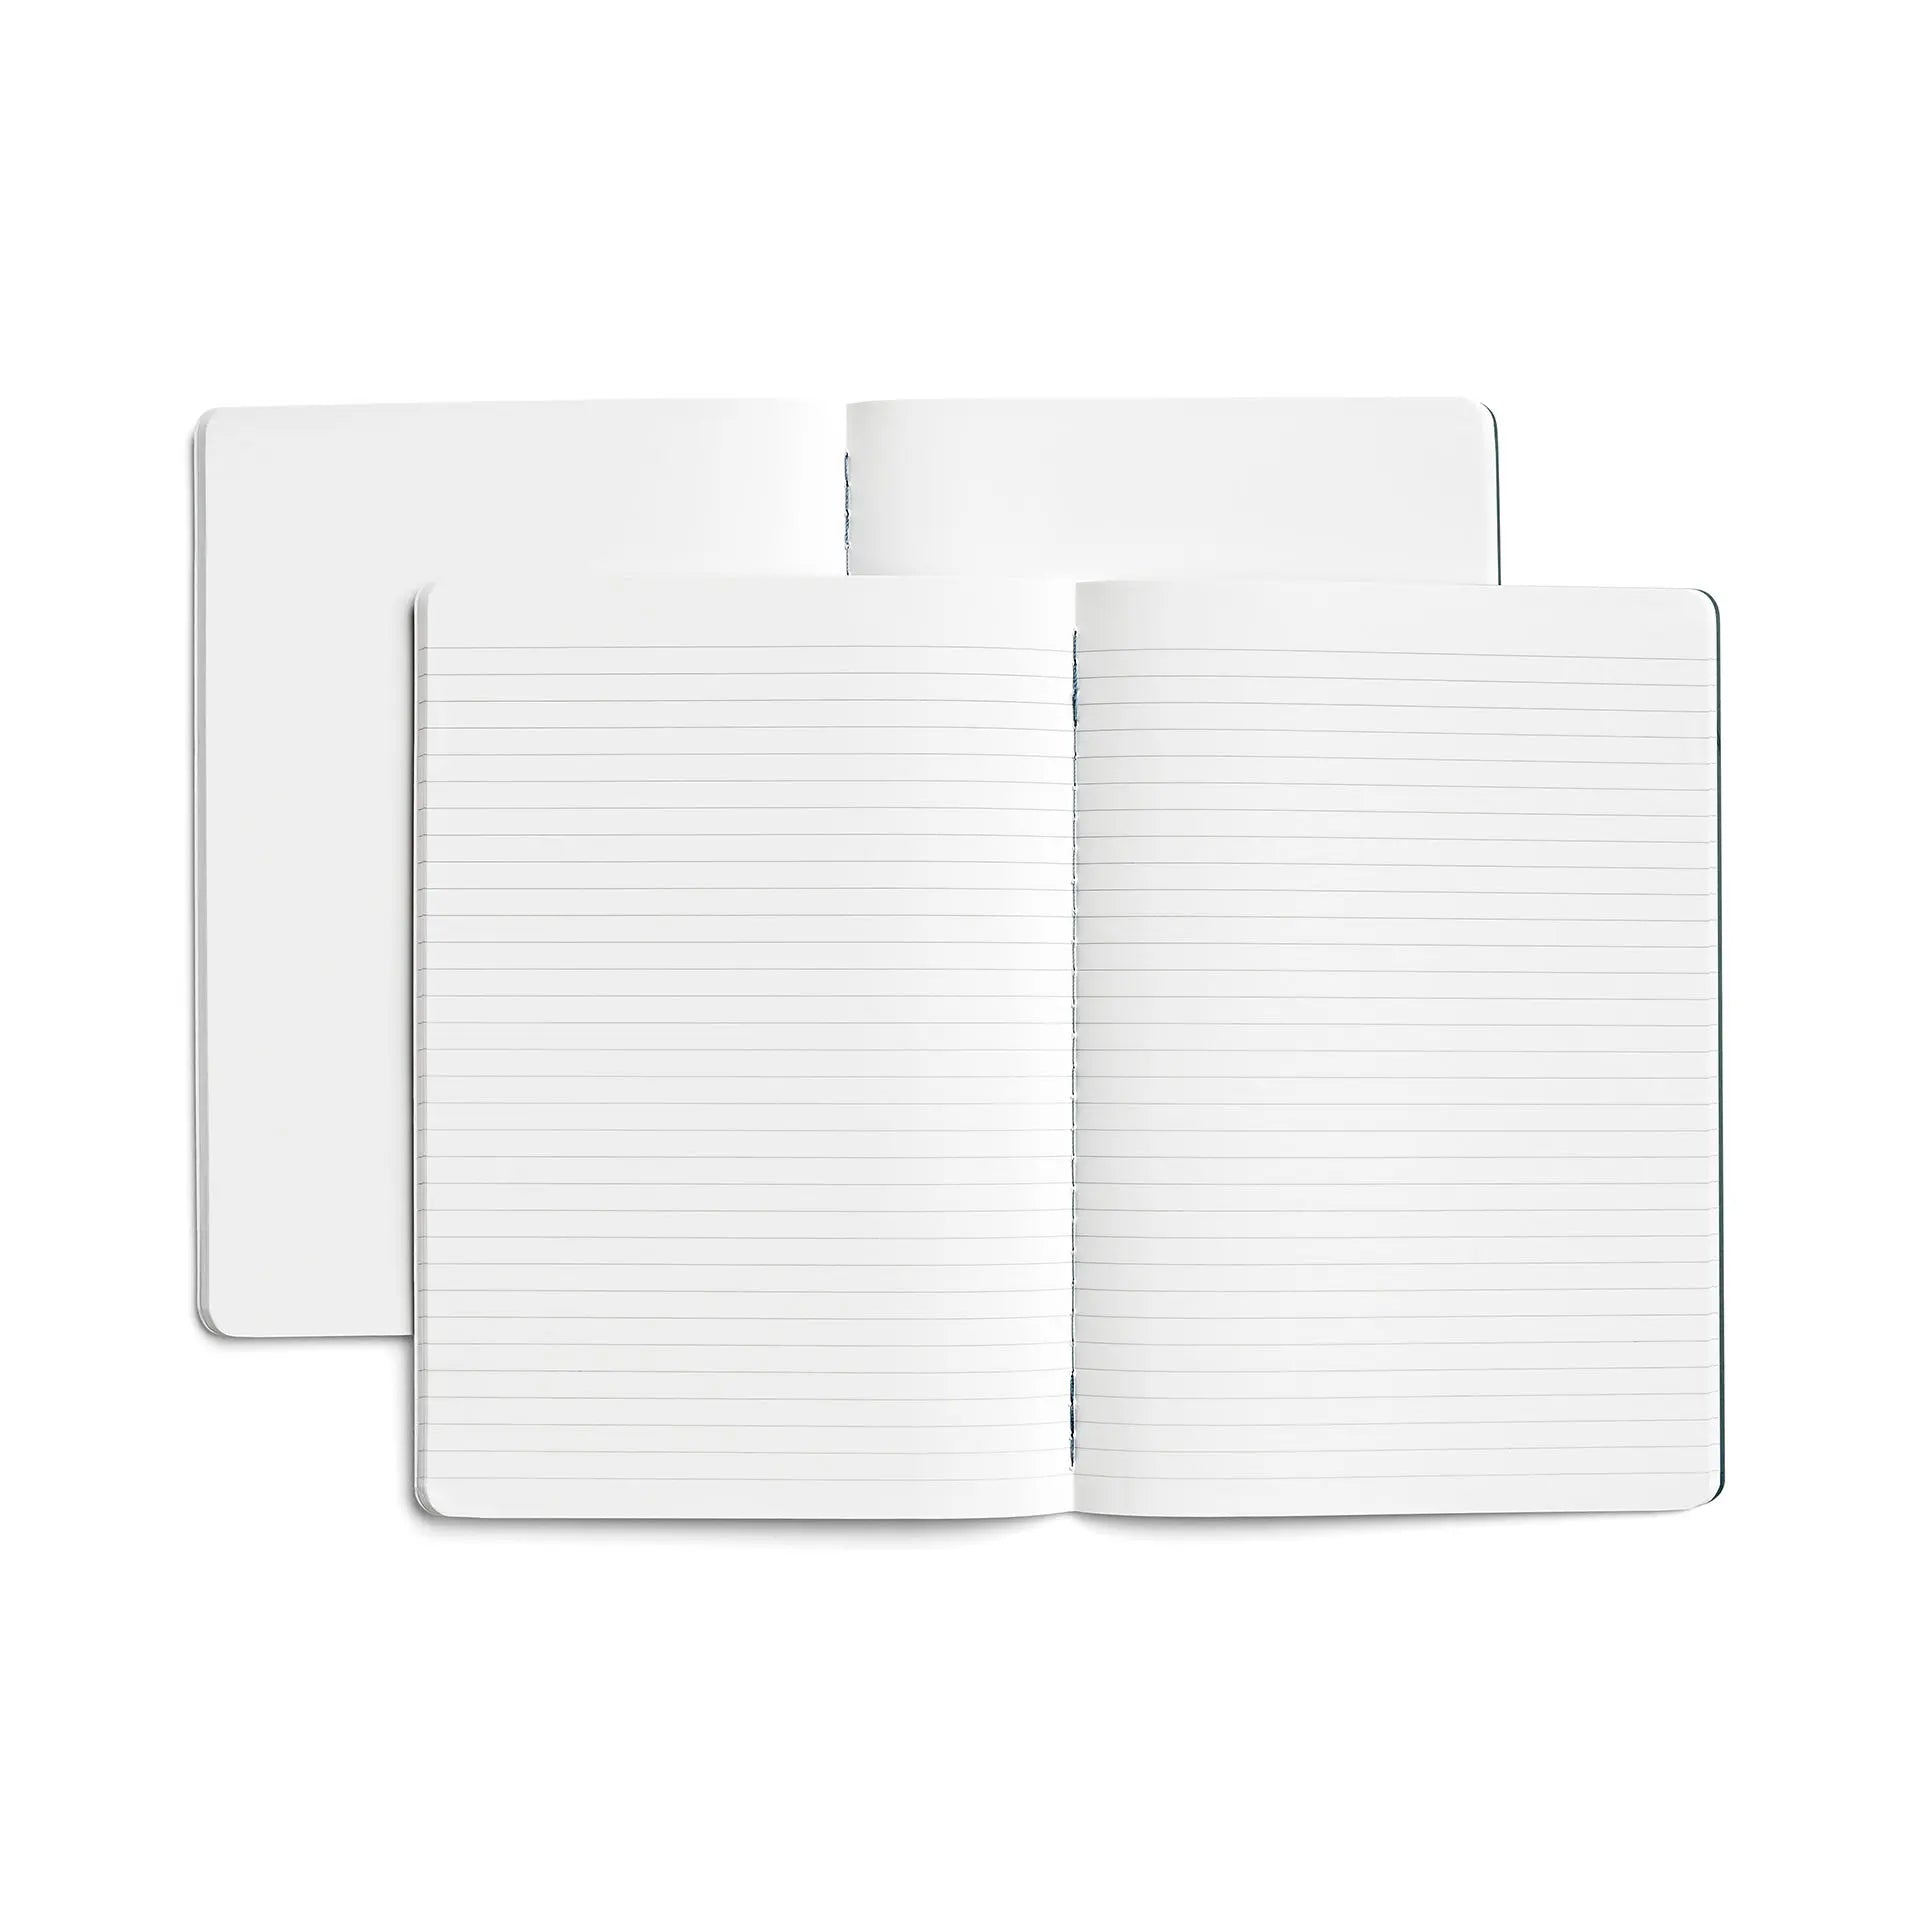 Karst stone paper journal A5 eucalypt twin pack binnenkant opengeslagen lijntjes en blanco papier spread